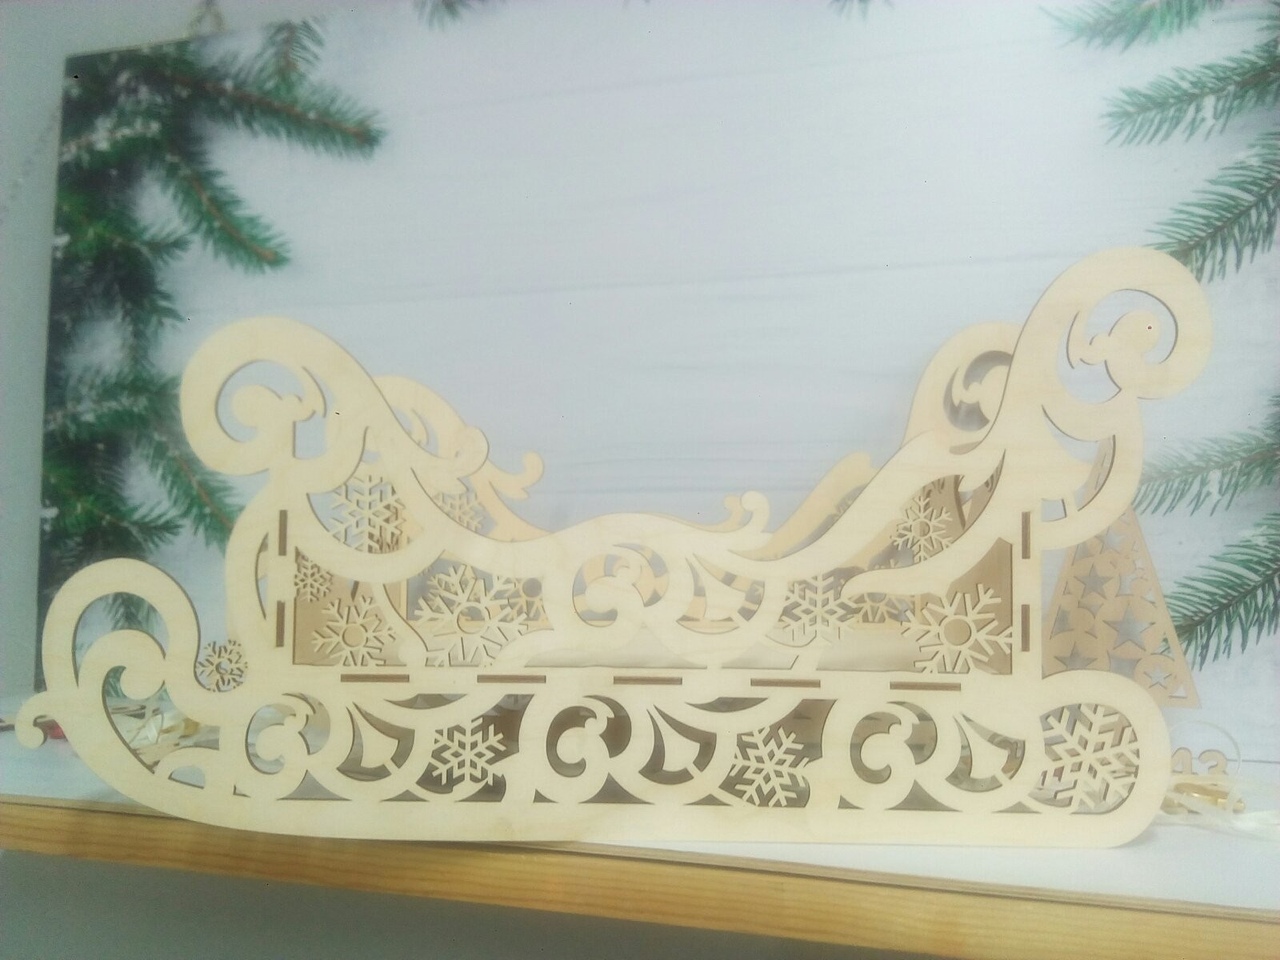 الگوی برش لیزری سورتمه تزئینی چوبی